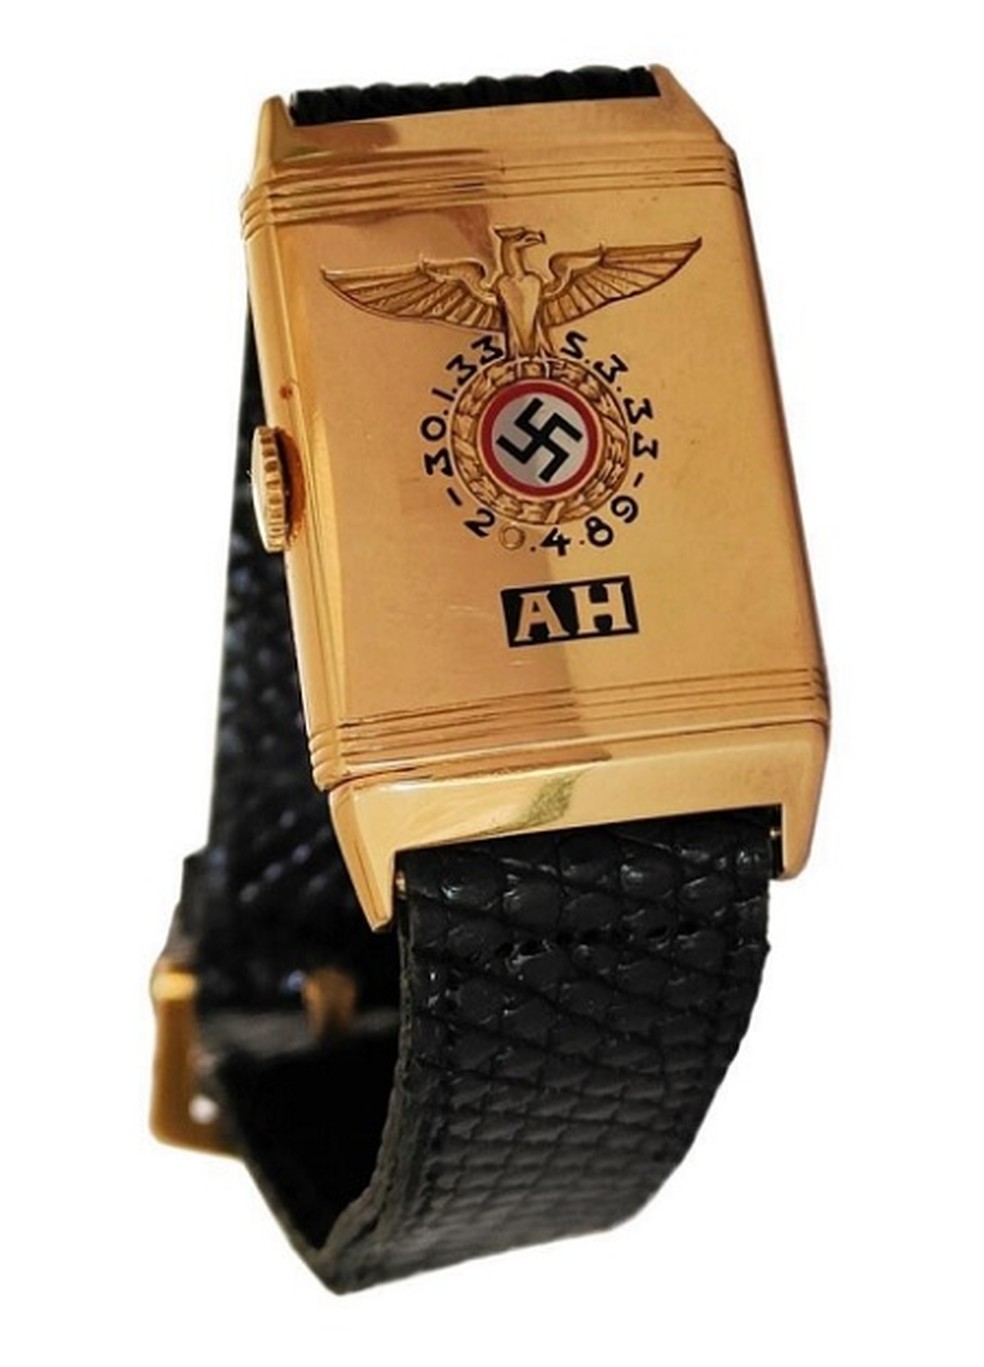 Relógio de pulso que teria pertencido ao ditador nazista Adolf Hitler  — Foto: Reprodução/ Alexander Historical Auctions